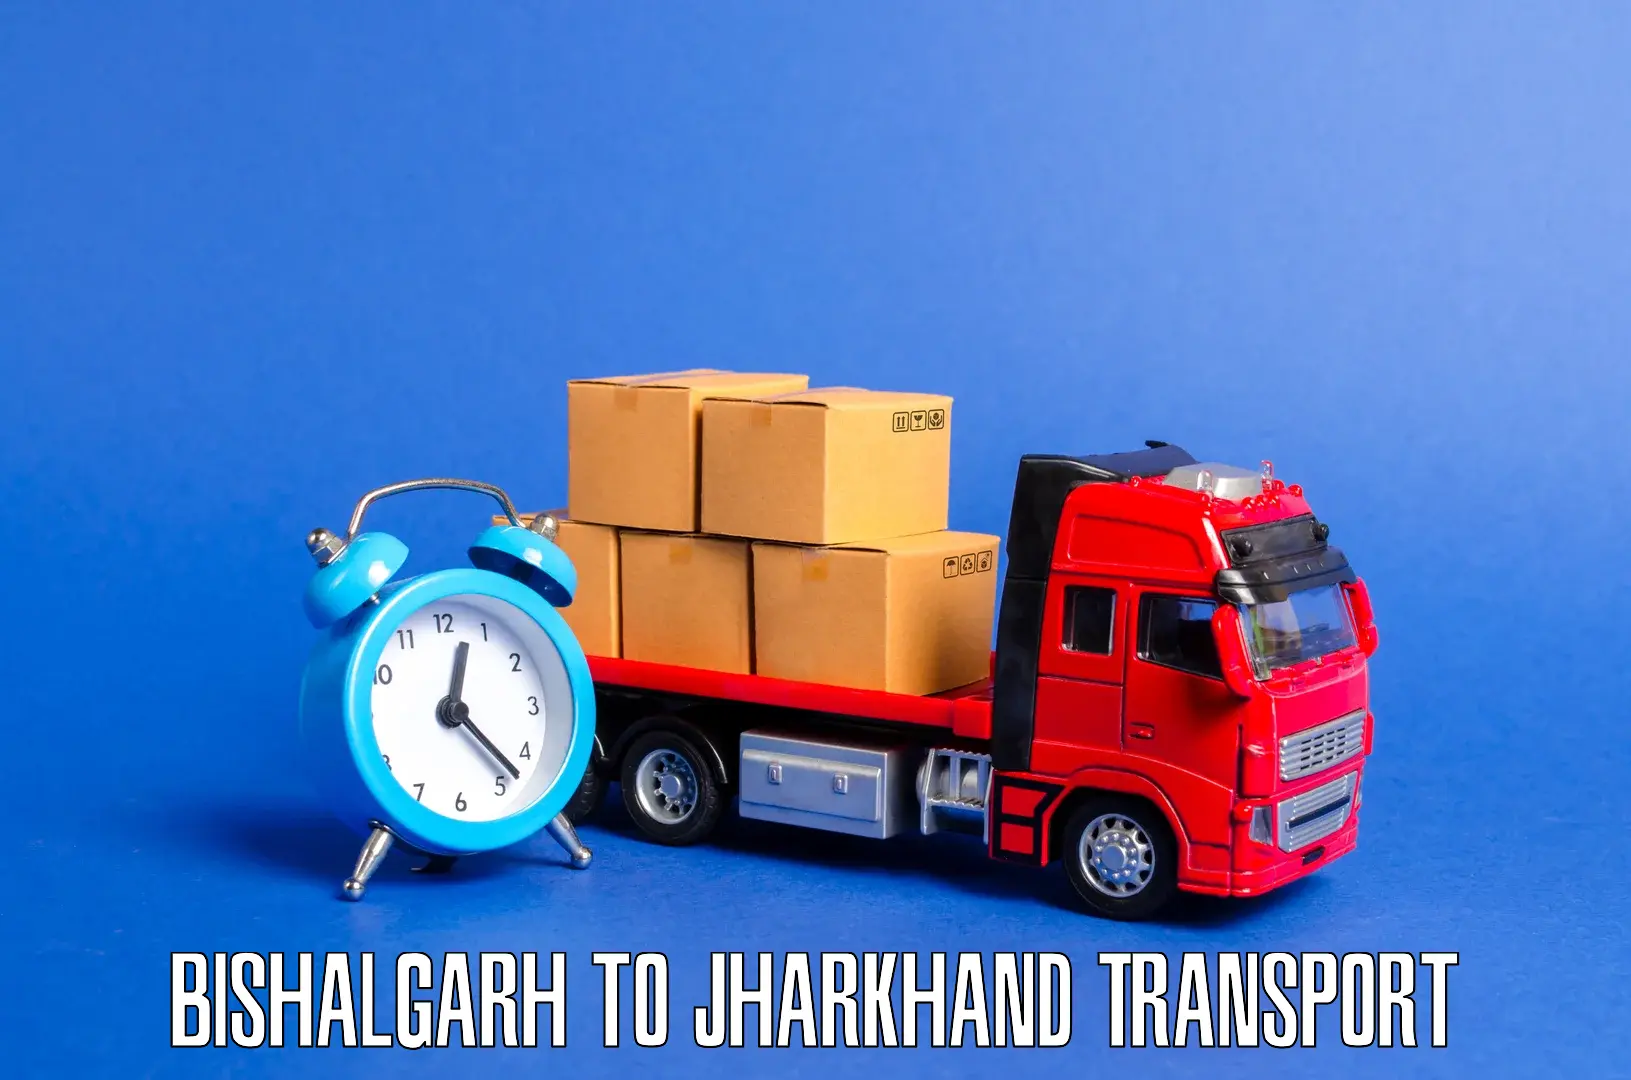 Goods delivery service Bishalgarh to Chakradharpur